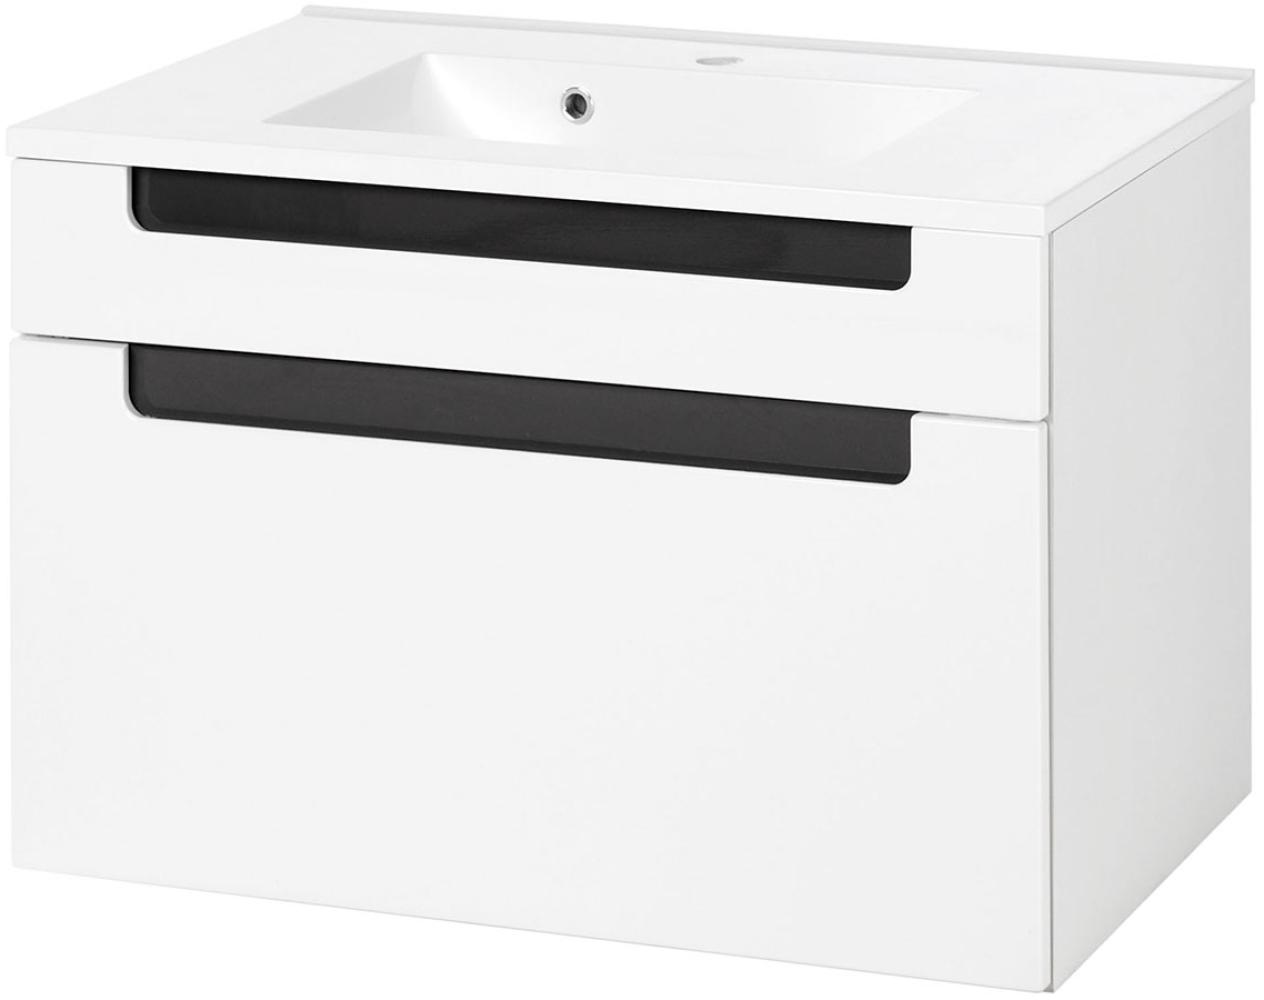 Waschtisch-Set >Siena< in Weiß/Hochglanz aus MDF - 80x54x47cm (BxHxT) Bild 1